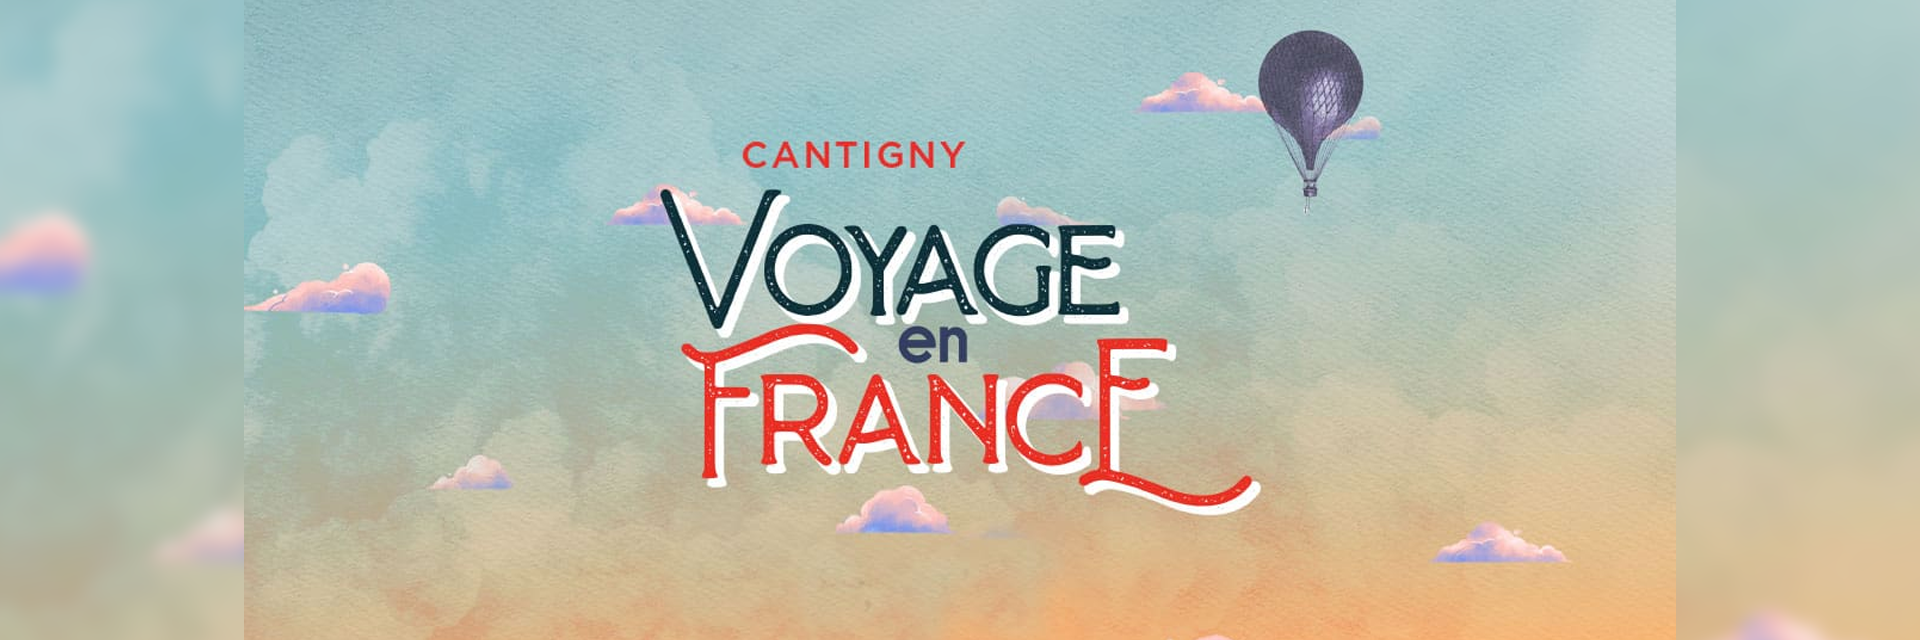 Cantigny's-Voyage en France